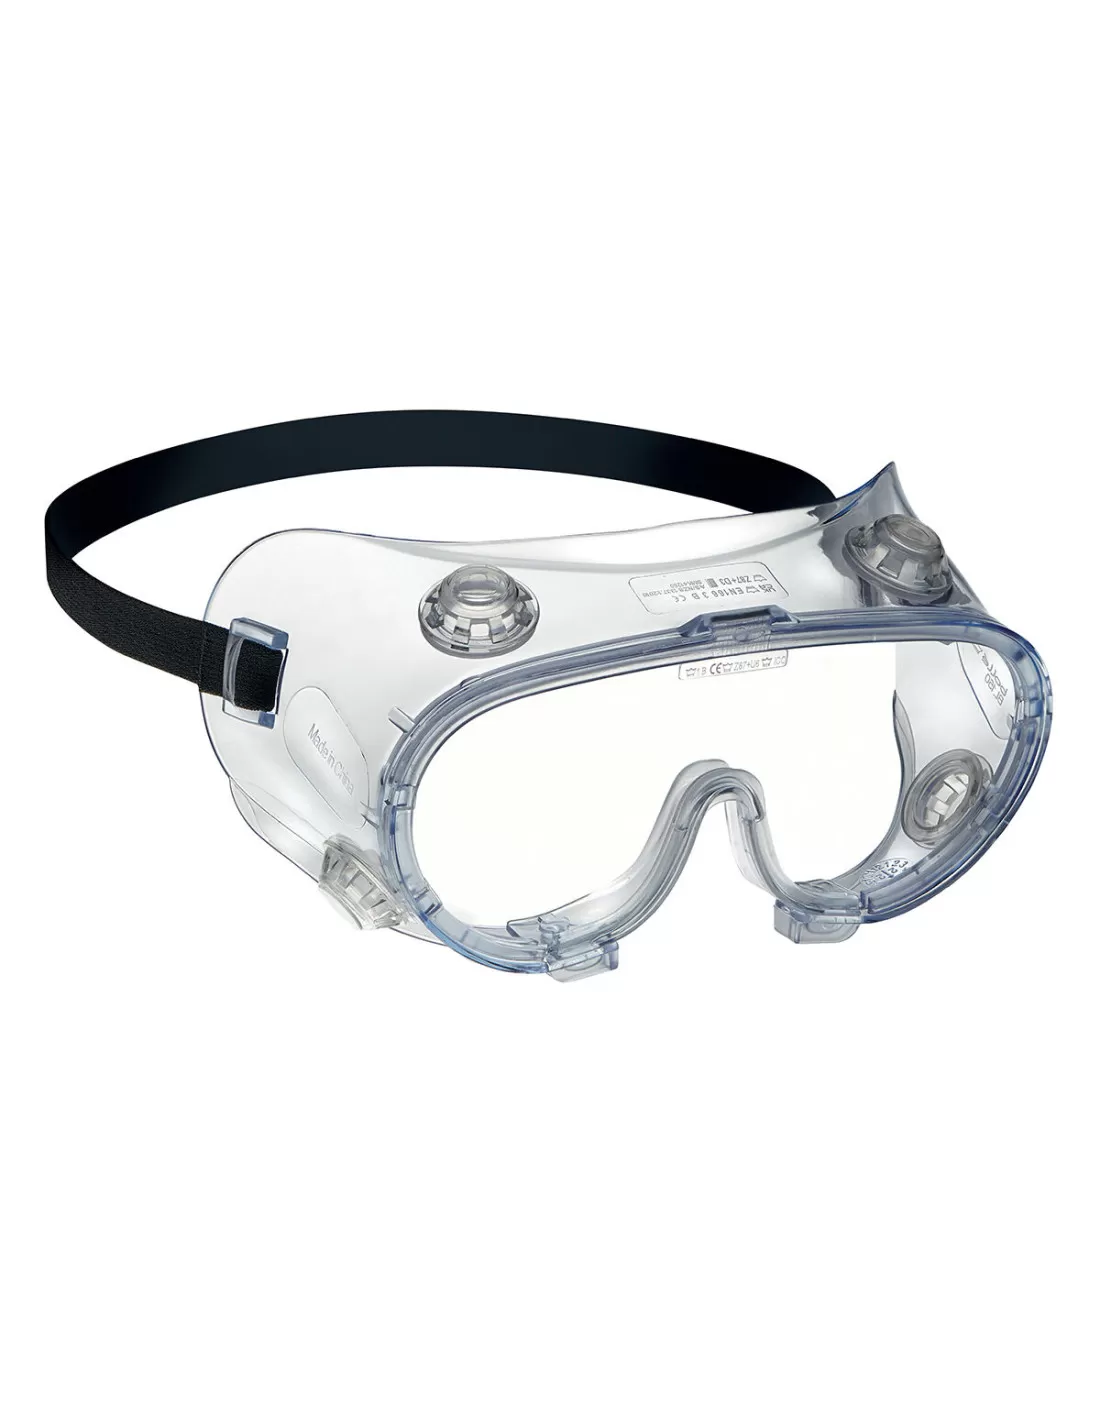 Lunette-Masque de Protection Vision 180°